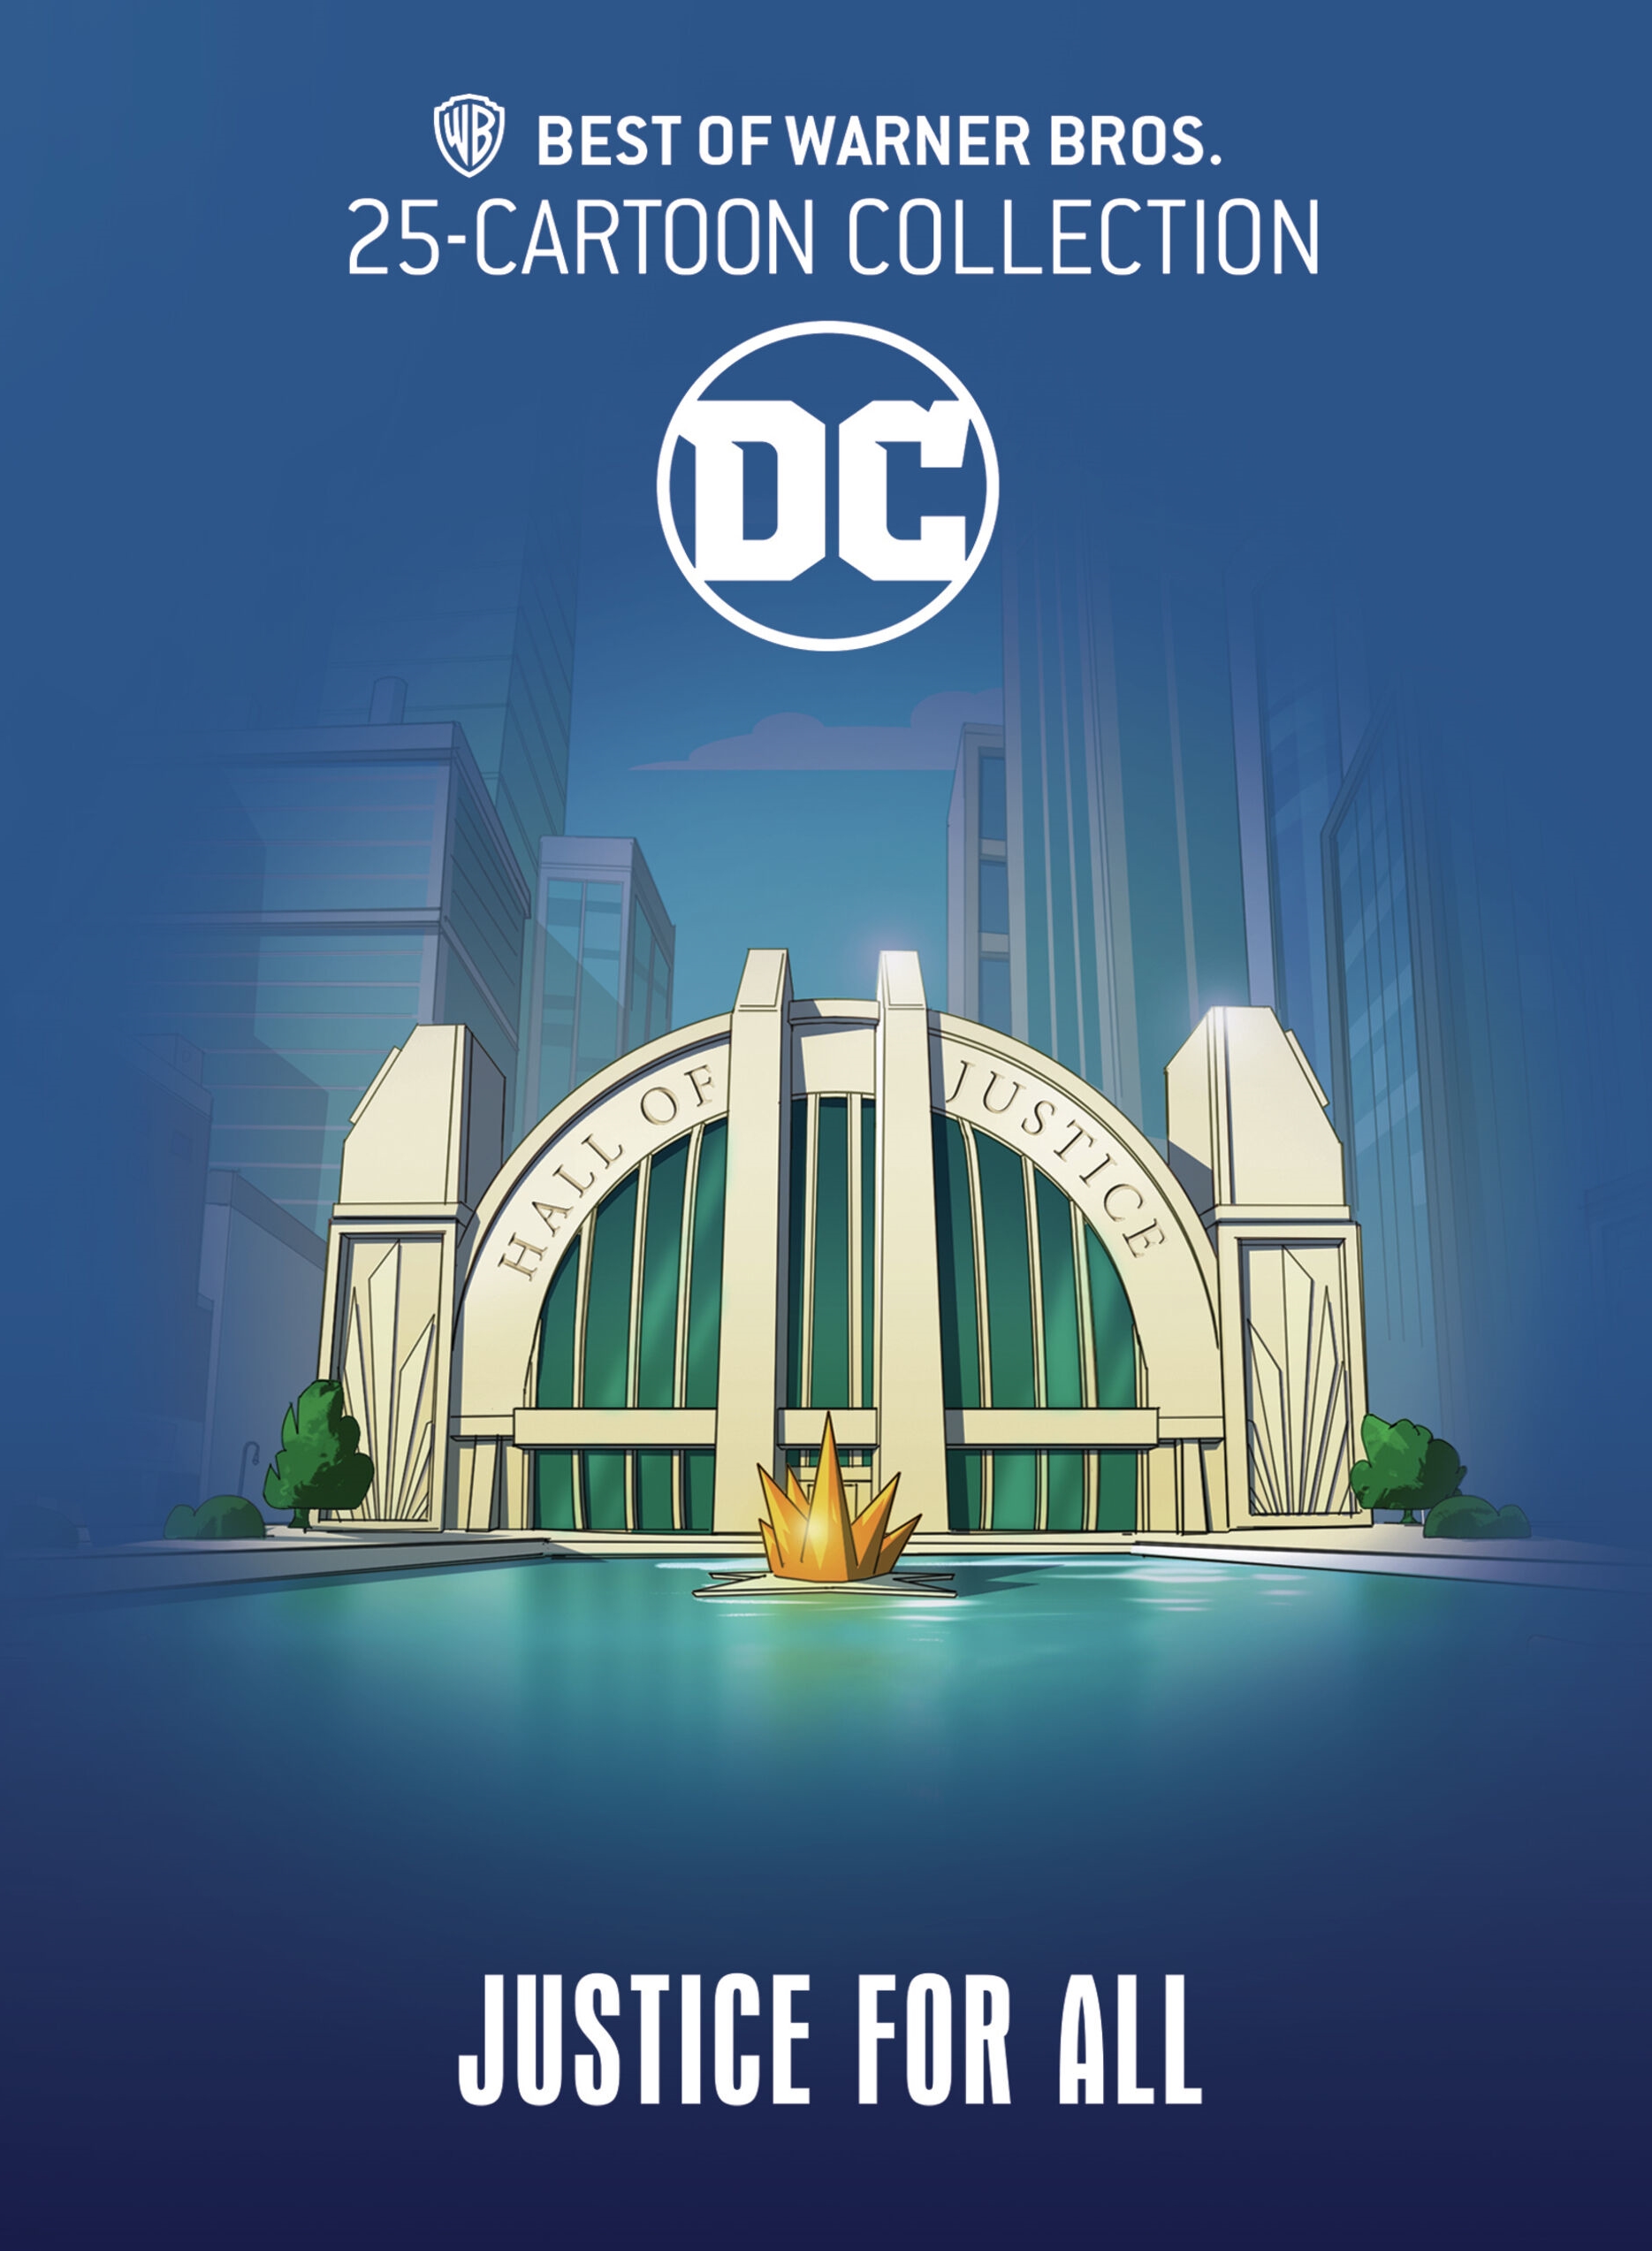 The Best of Warner Bros. 25 Cartoon Collection DC Comics [DVD] - Best Buy